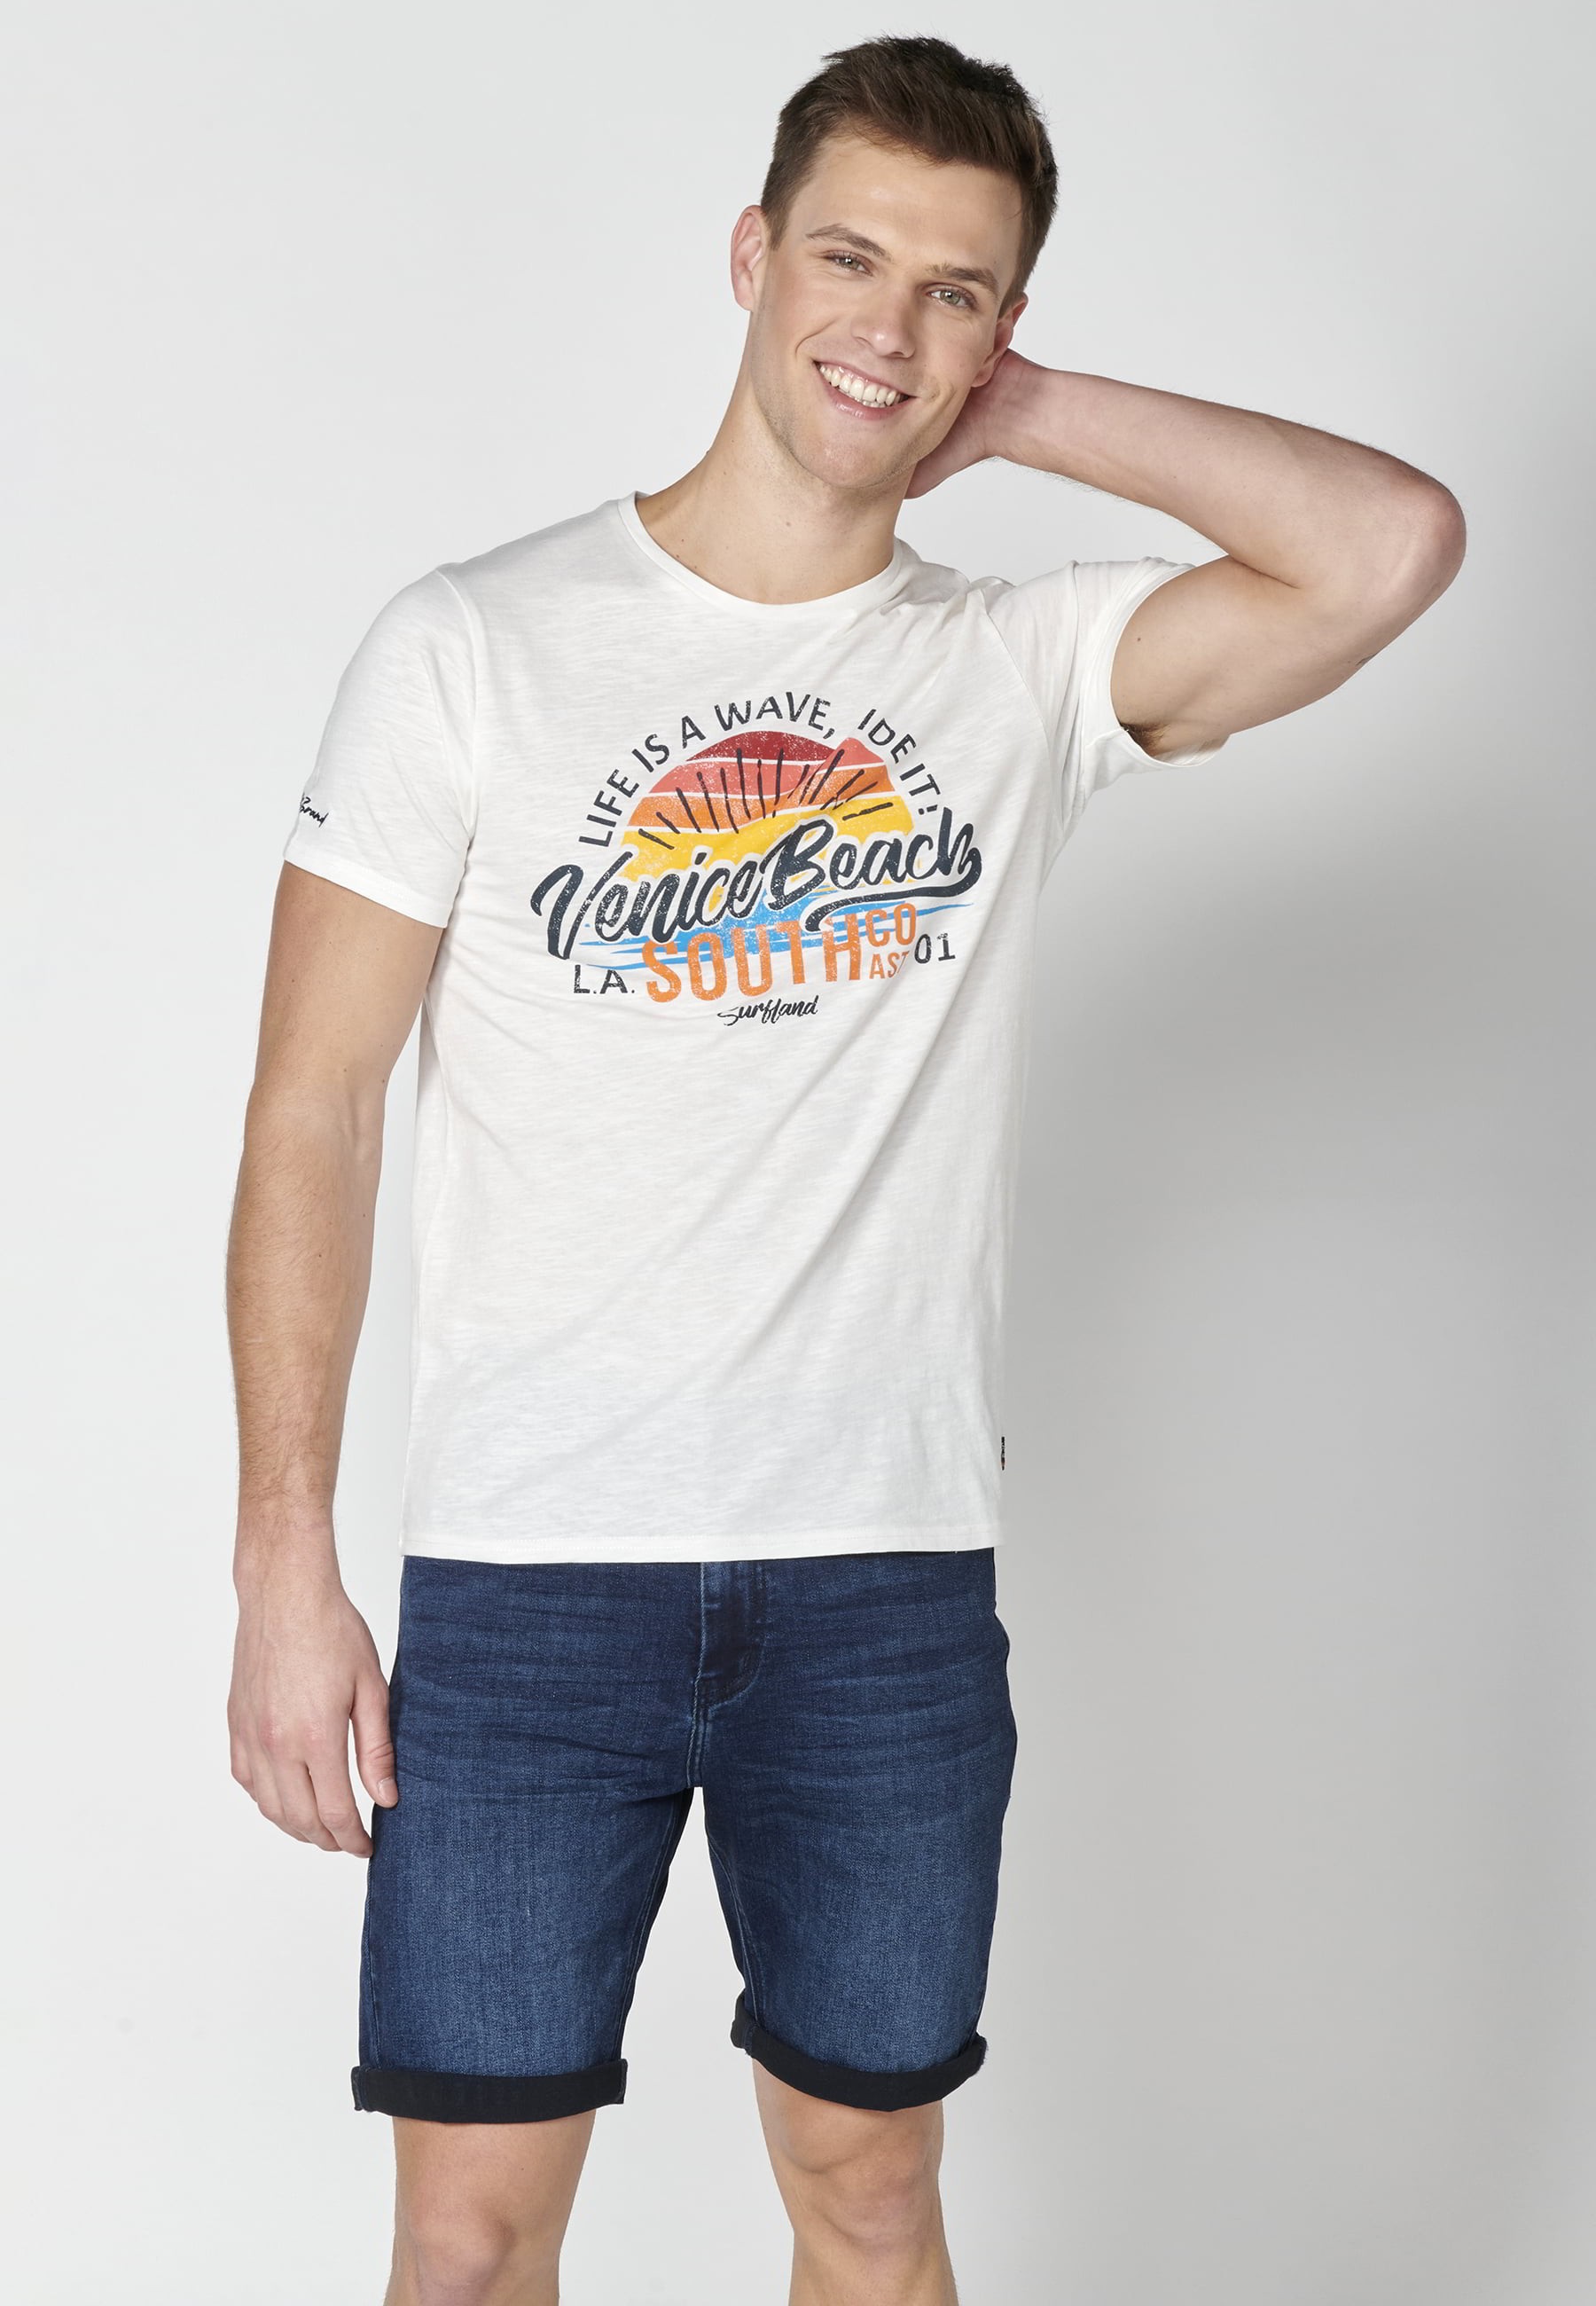 Ecru Cotton Short Sleeve T-shirt for Men